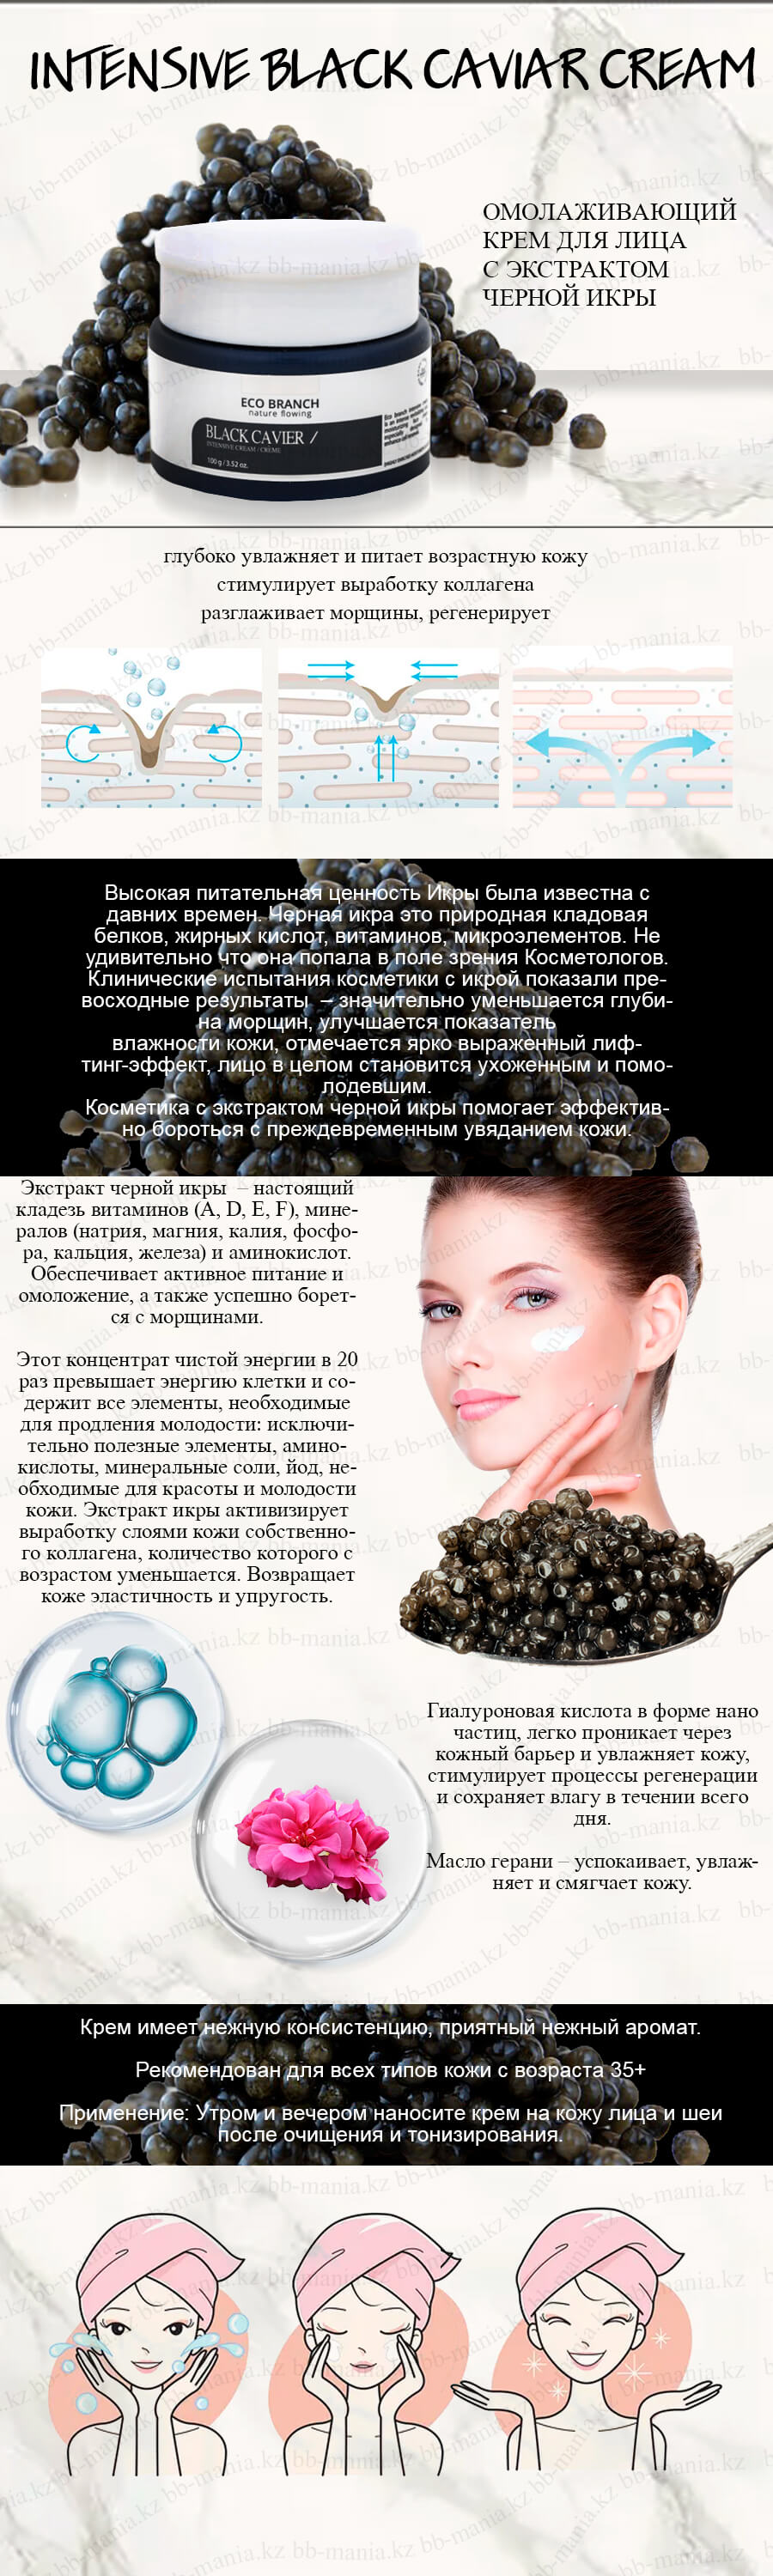 Intensive-Black-Caviar-Cream-[Eco-Branch]